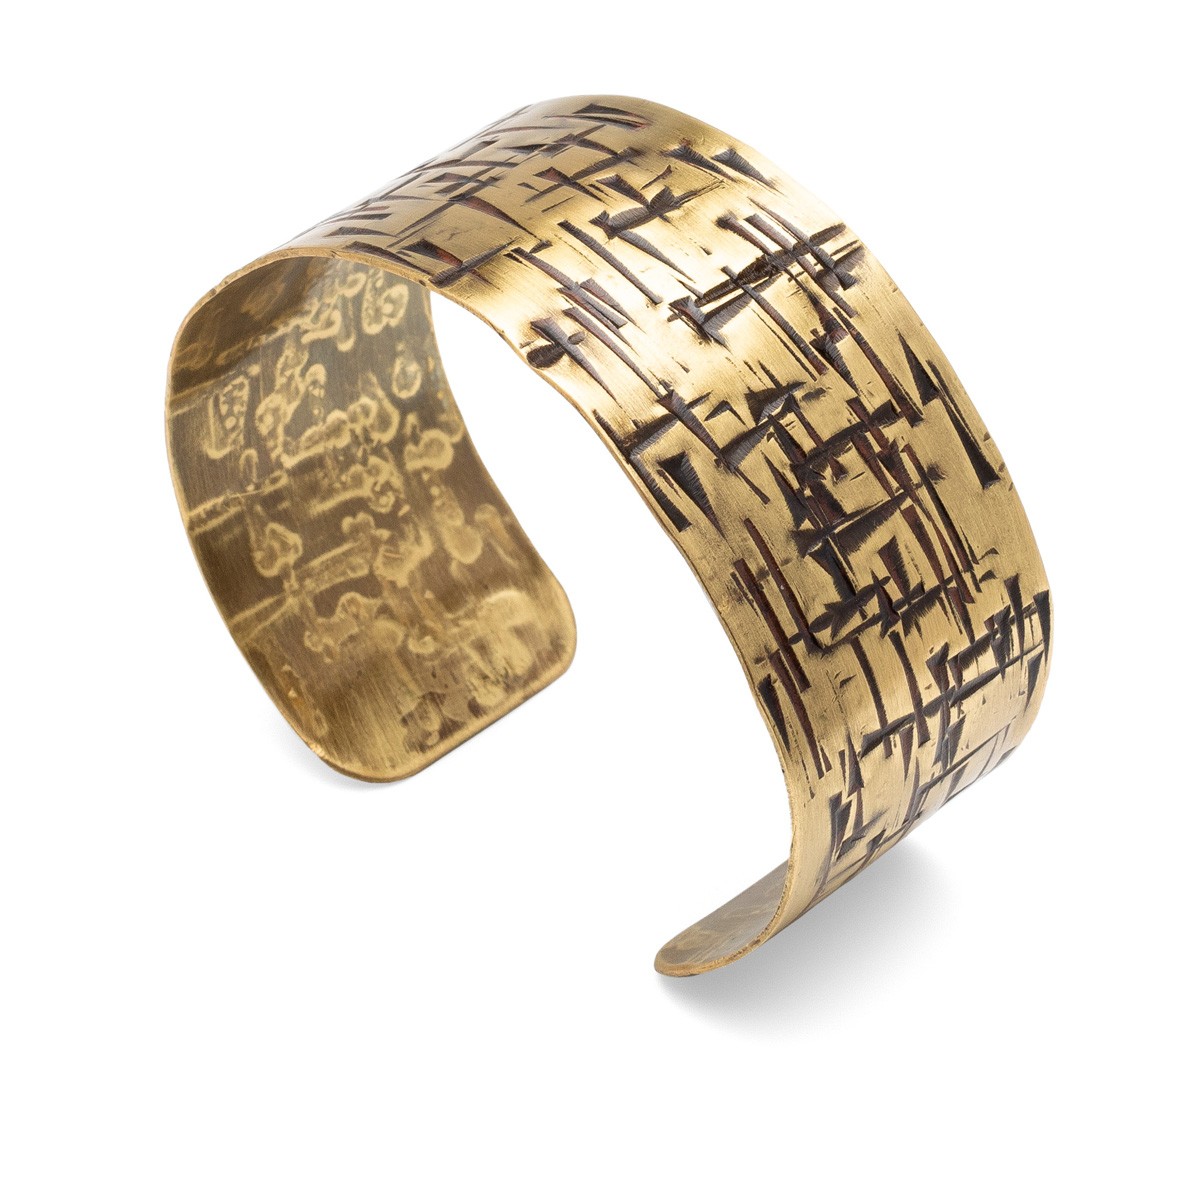 Copper bracelet with cross shape